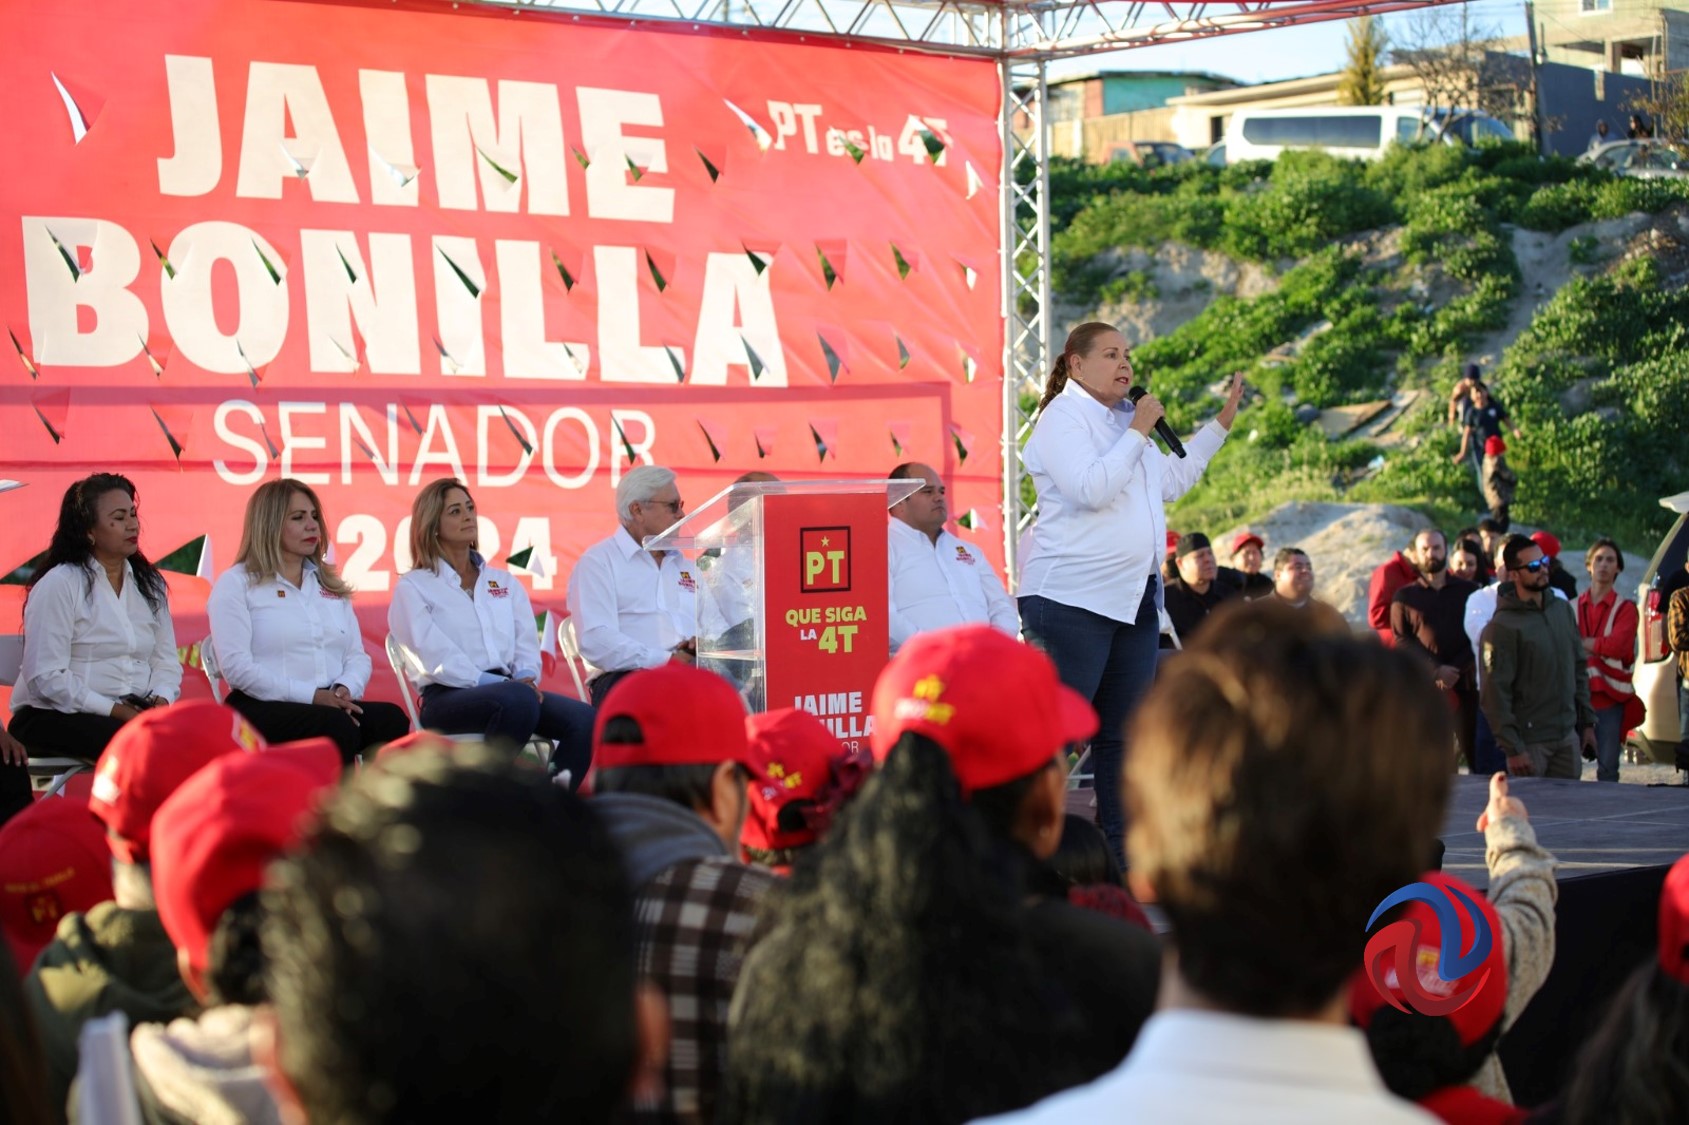 El PT va solo, reitera Bonilla en arranque de campaña